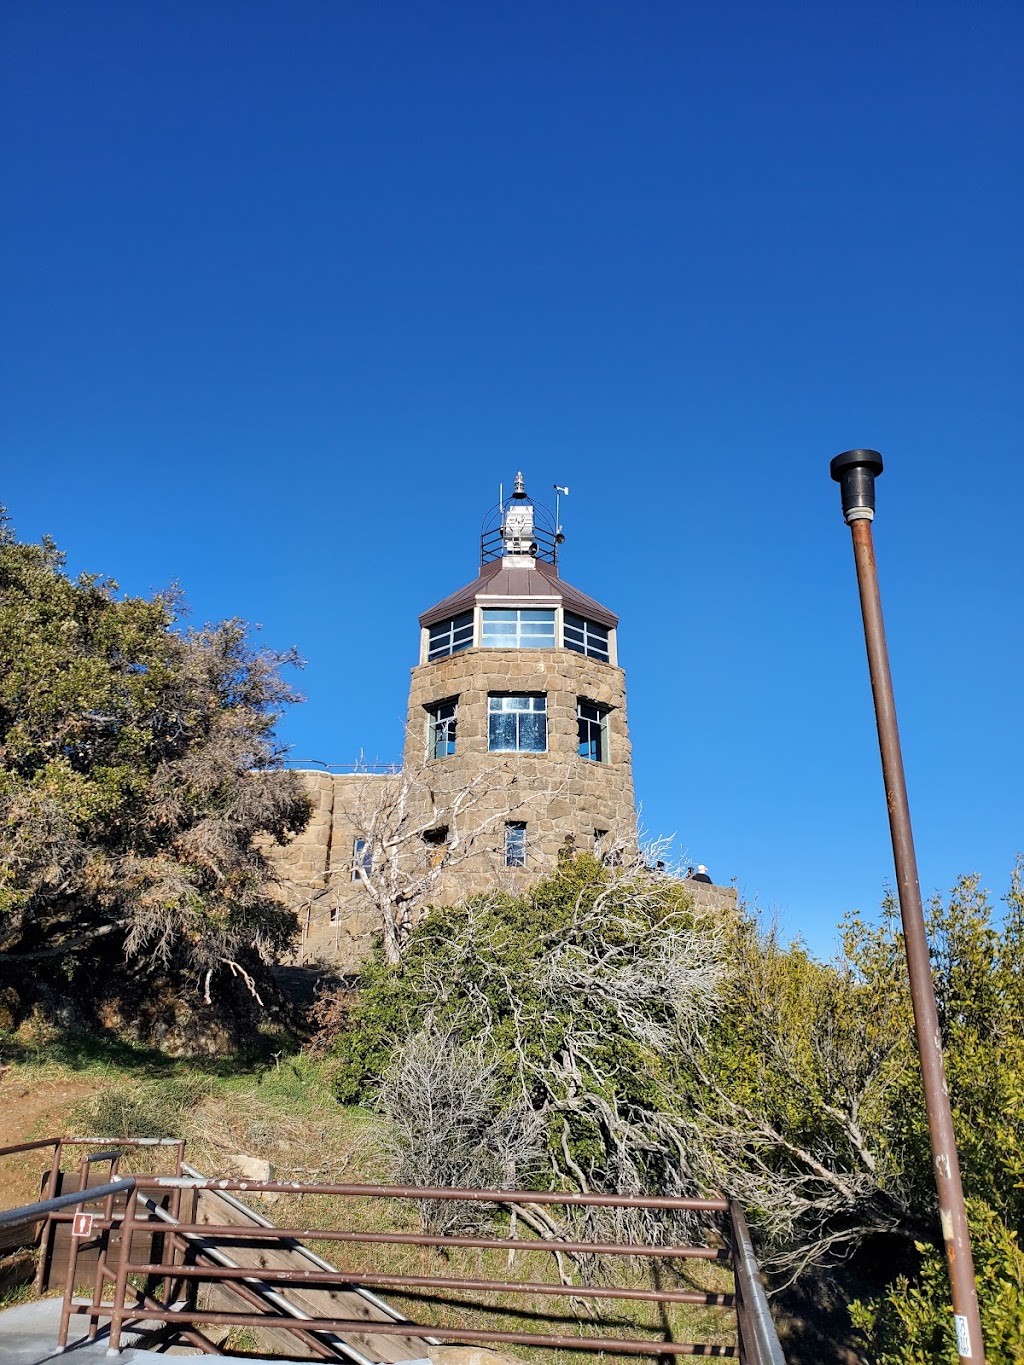 Mount Diablo Summit Museum and Trailhead | Summit Rd, Walnut Creek, CA 94598 | Phone: (925) 837-6119